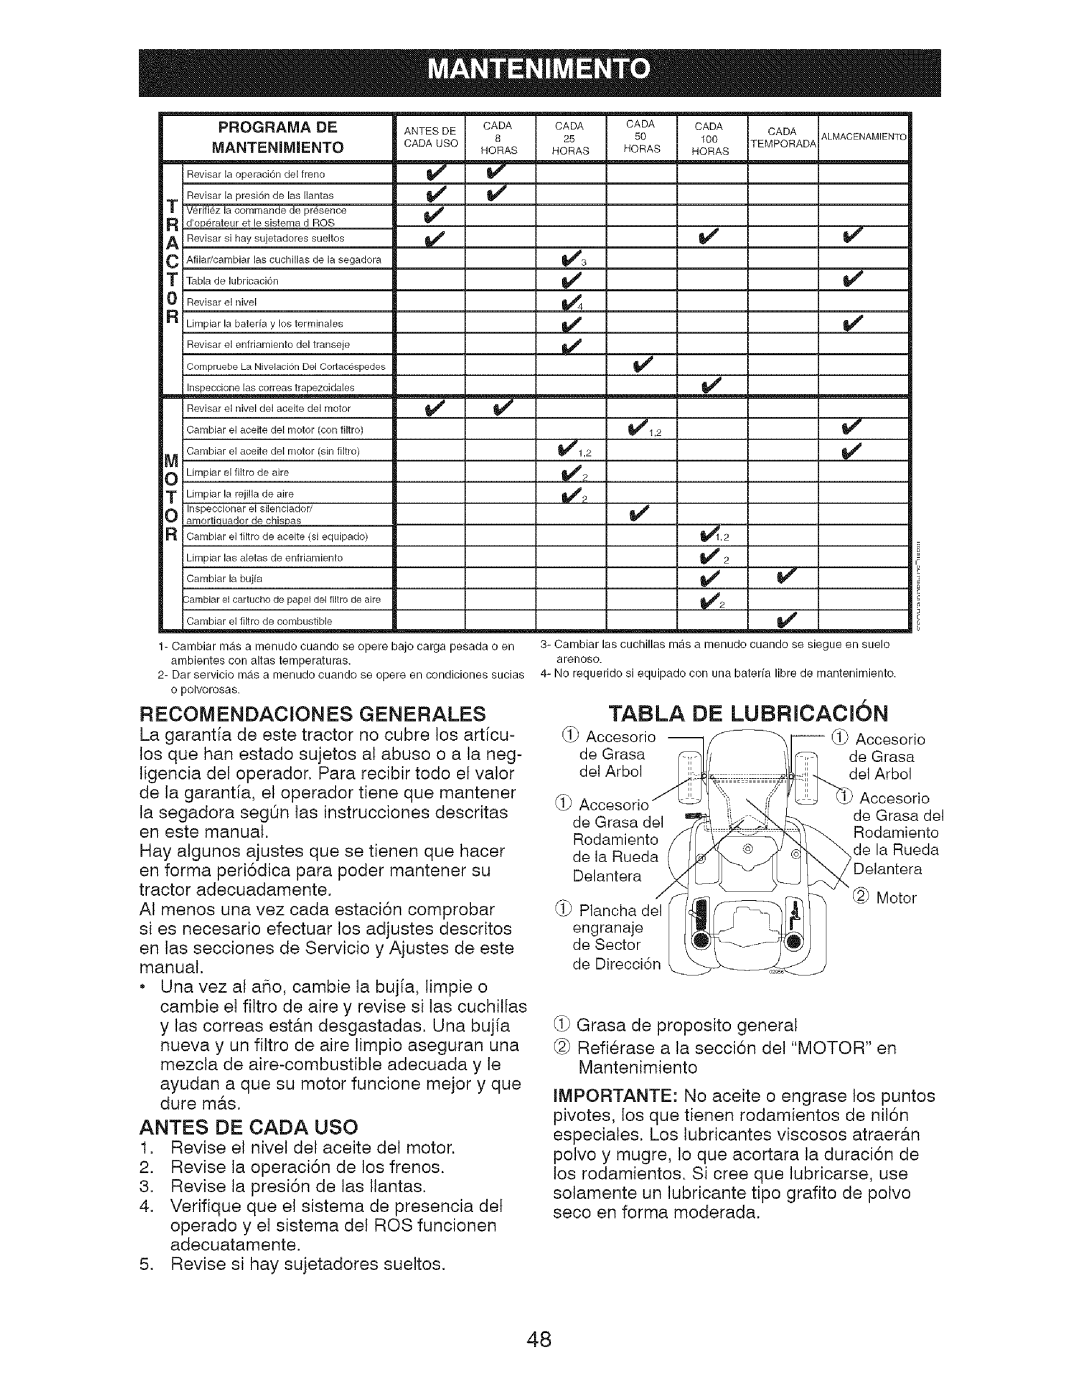 Craftsman 917.28726 owner manual Tabla, De Lubricacion, Programa De Mantenimiento 